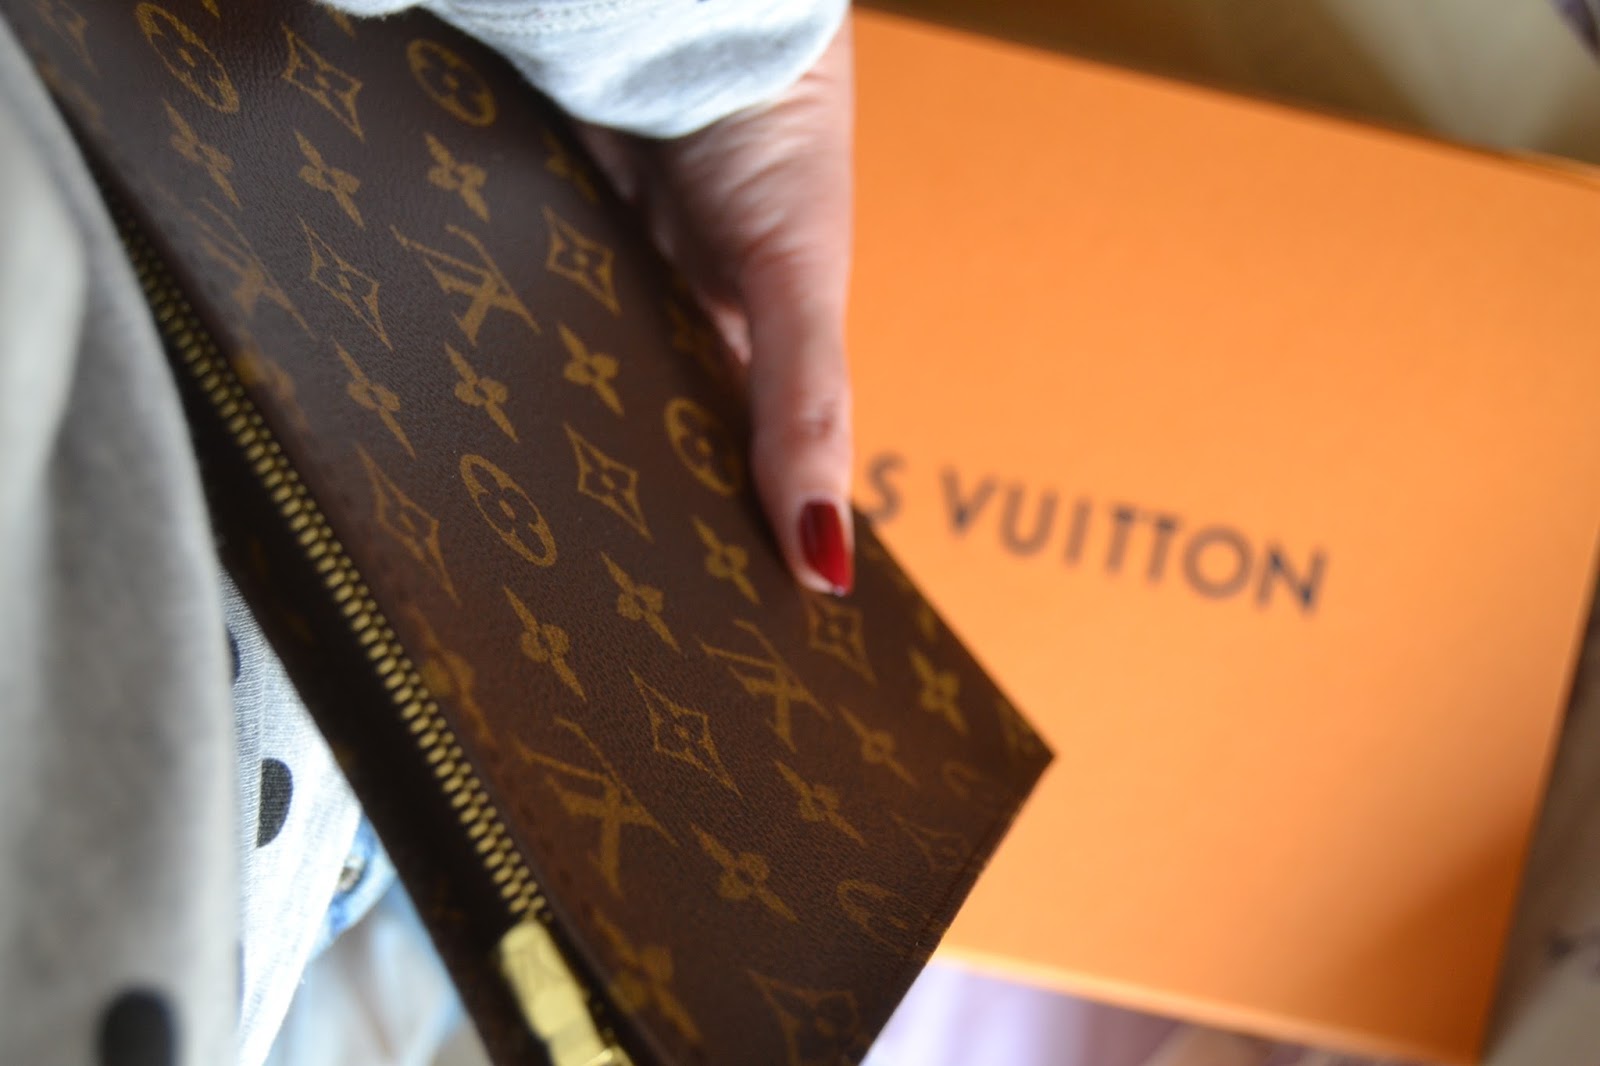 Louis Vuitton - Clientes